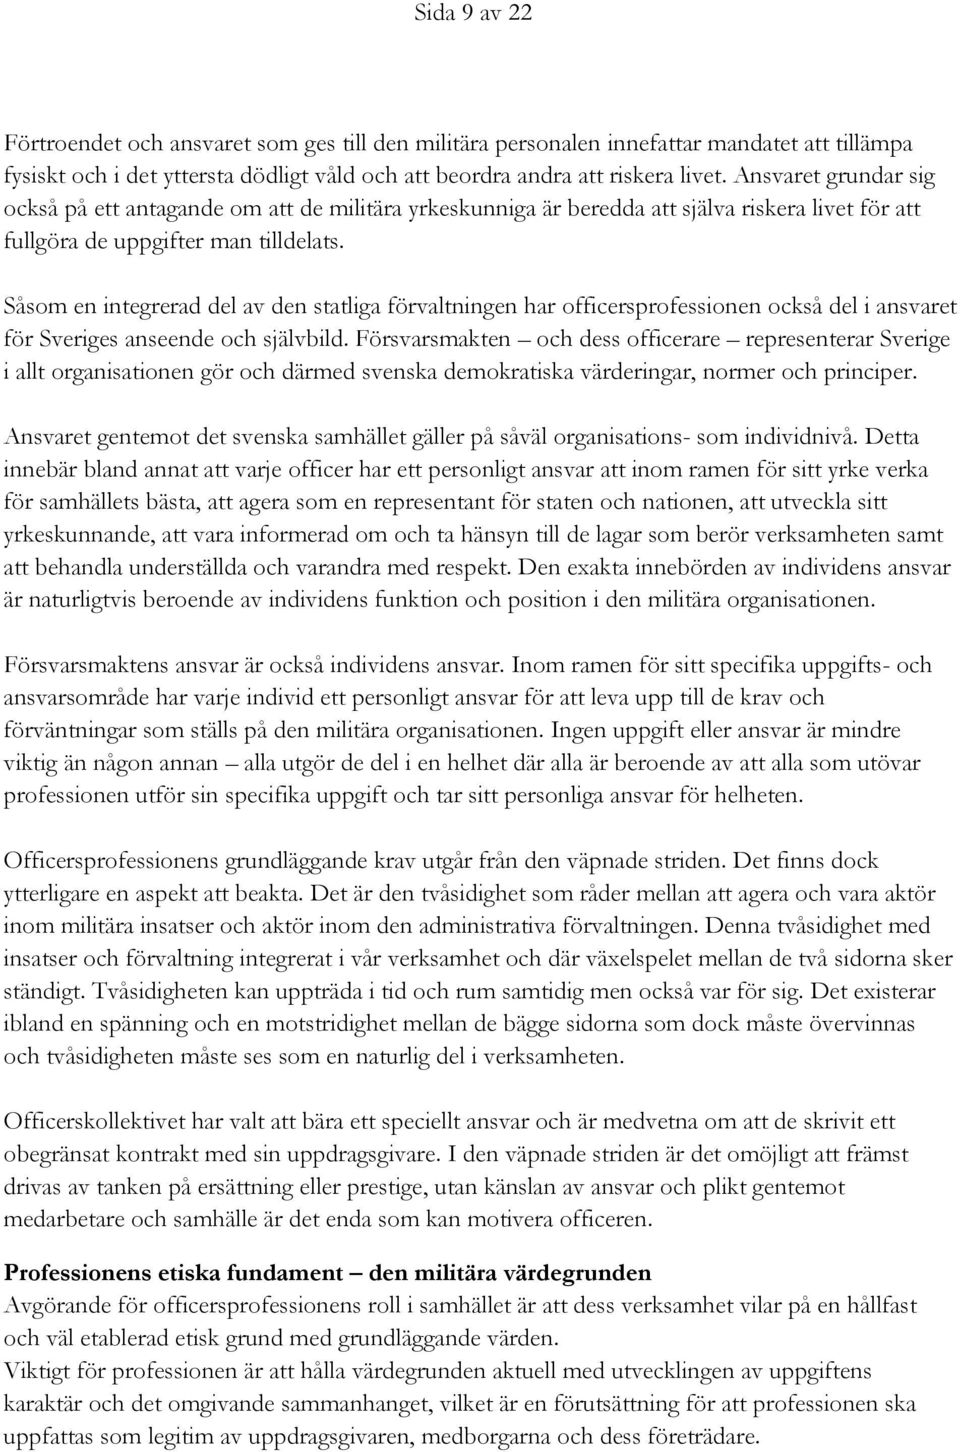 Såsom en integrerad del av den statliga förvaltningen har officersprofessionen också del i ansvaret för Sveriges anseende och självbild.